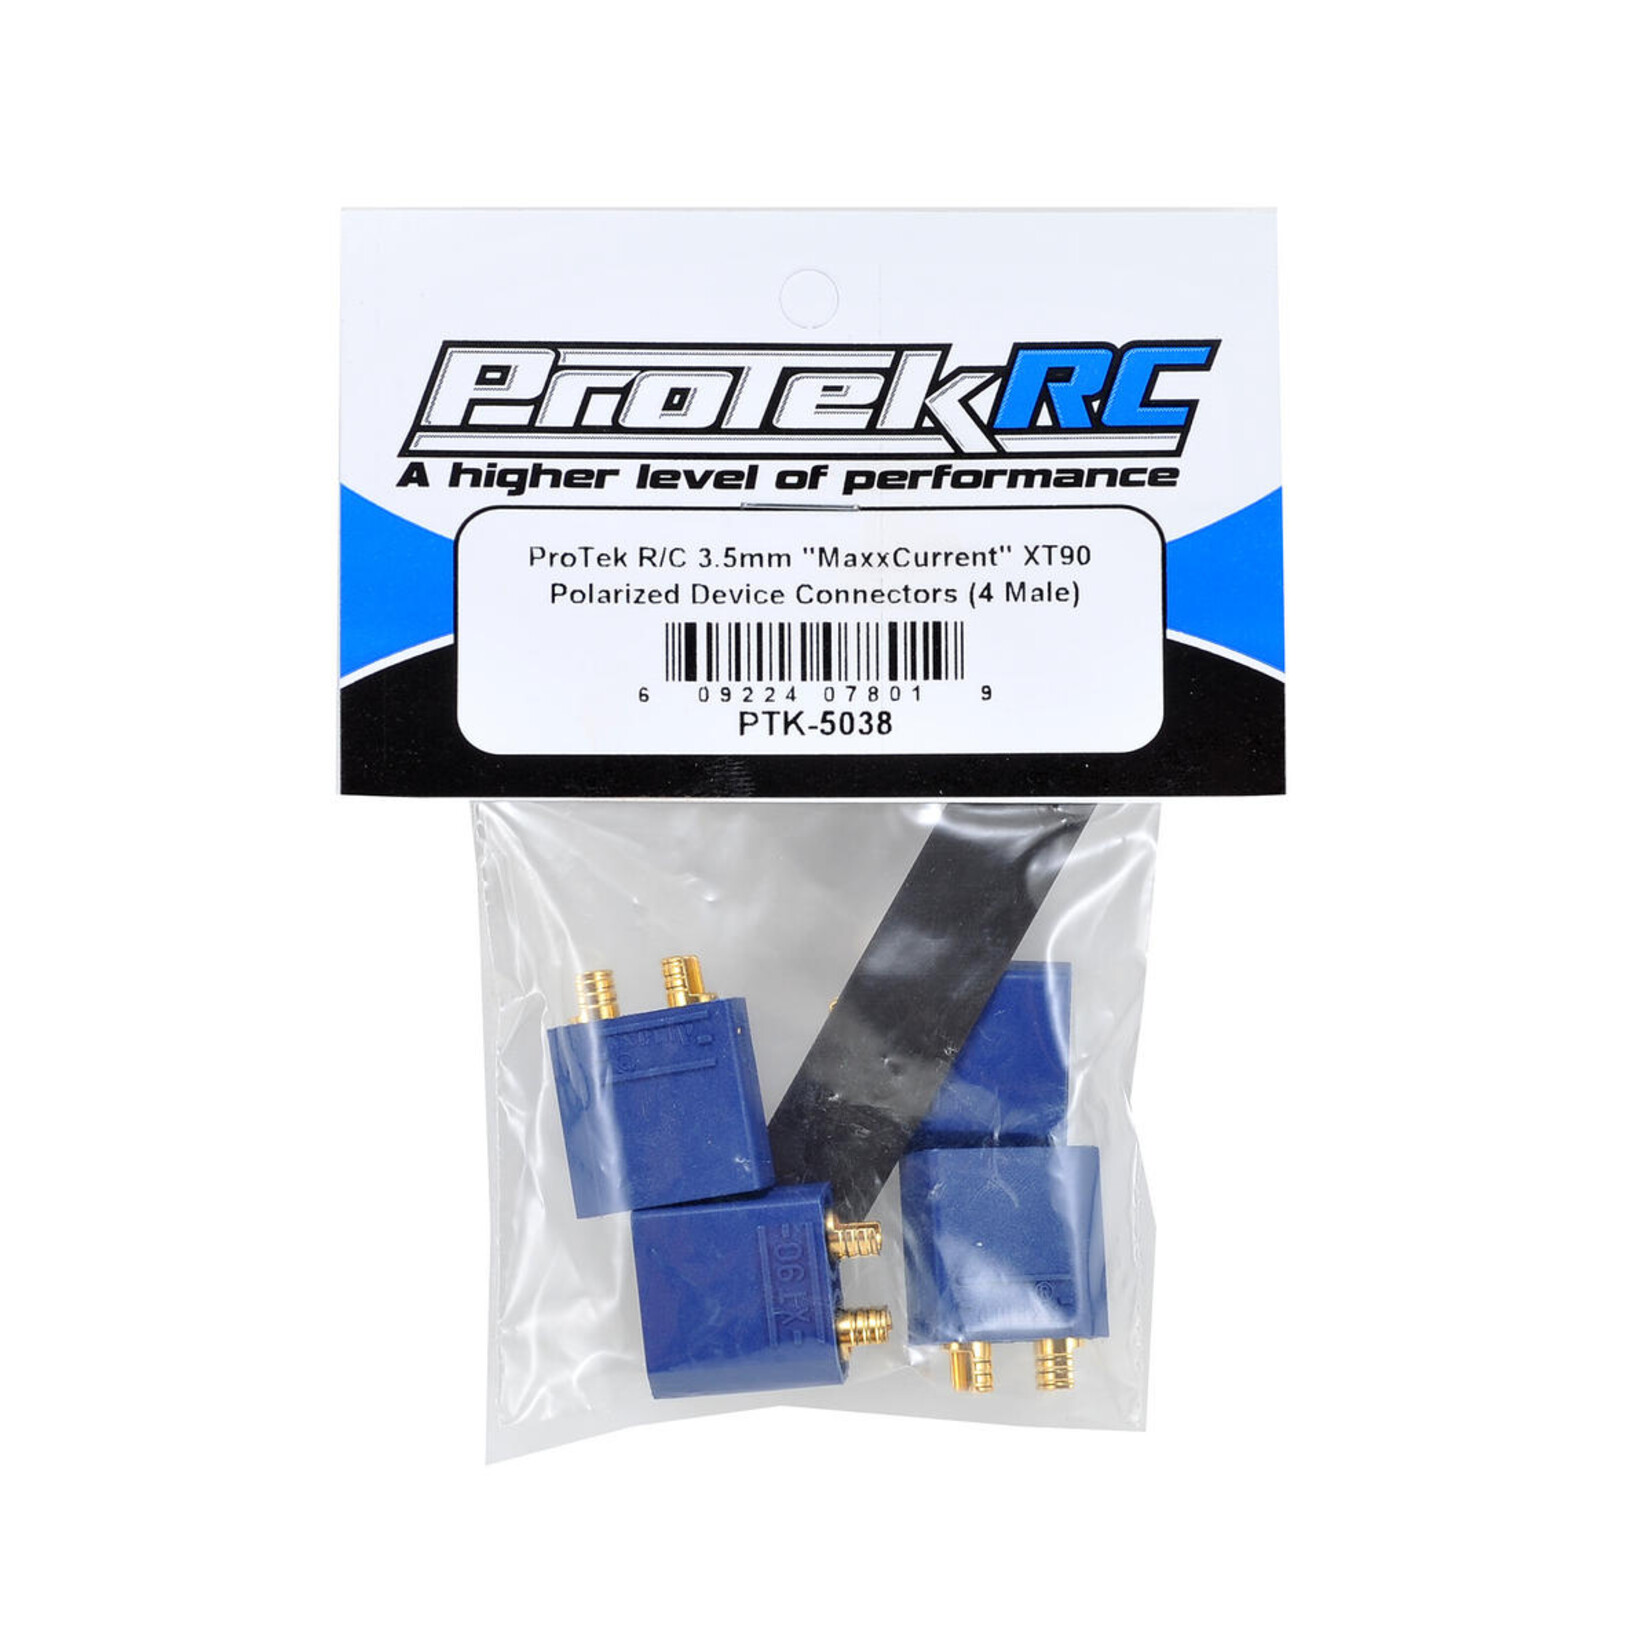 ProTek RC ProTek RC 4.5mm "TruCurrent" XT90 Polarized Device Connectors (4 Male) #PTK-5038